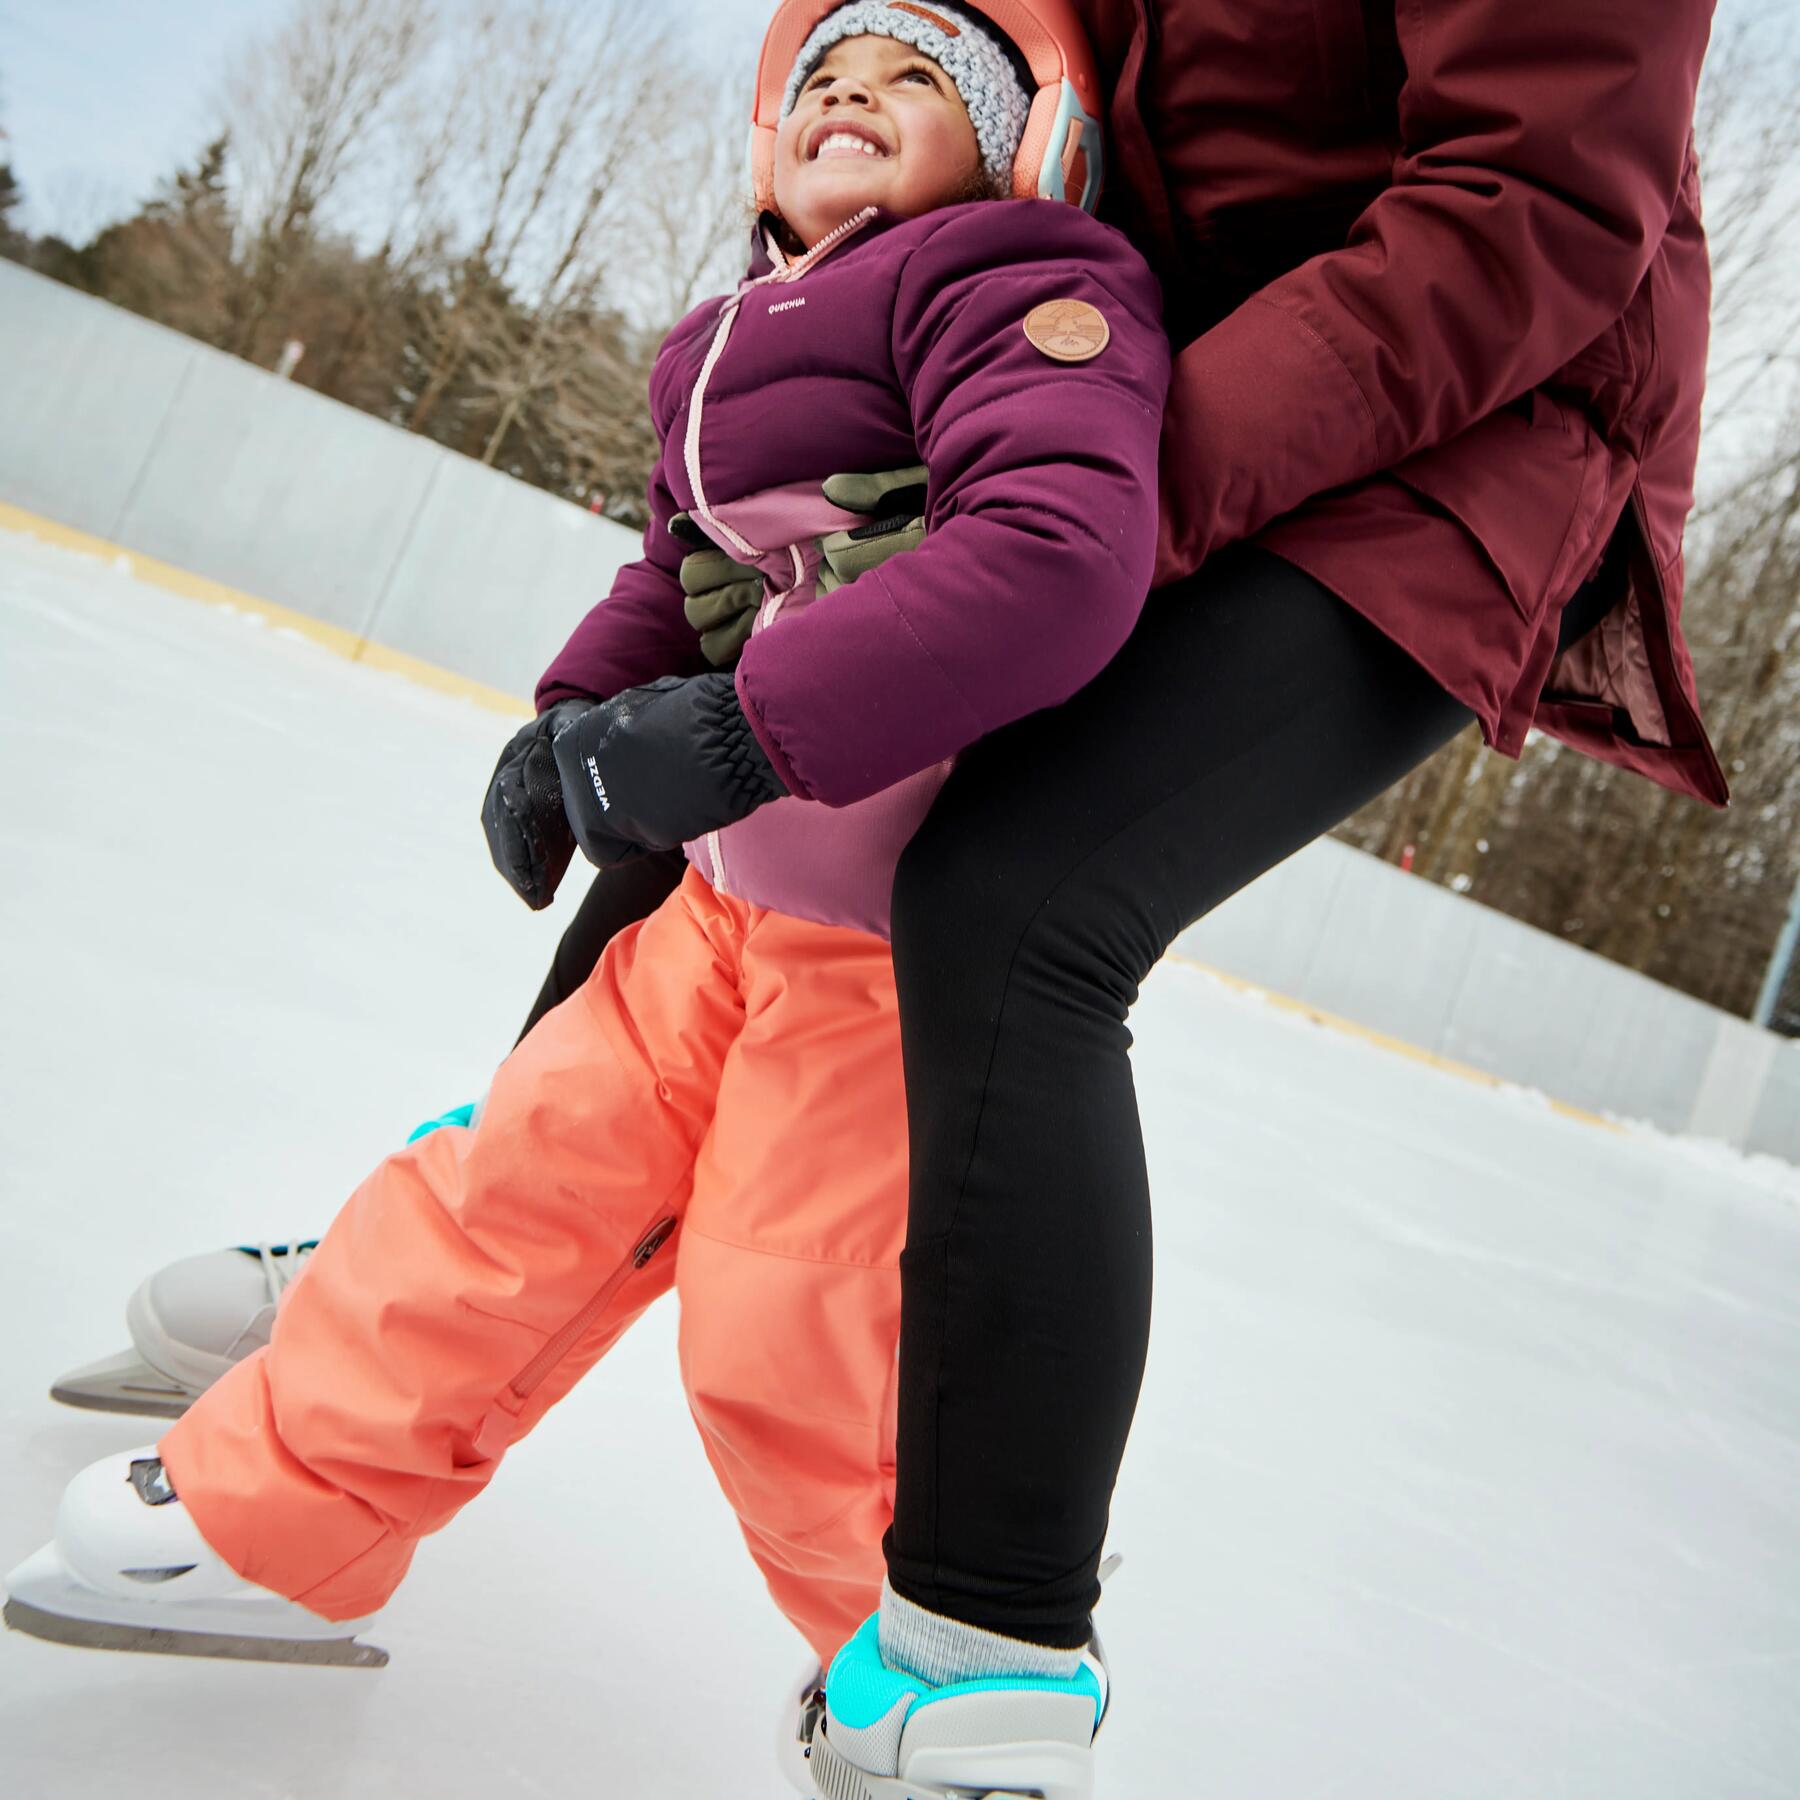 jeune garçon et jeune fille en train de patiner